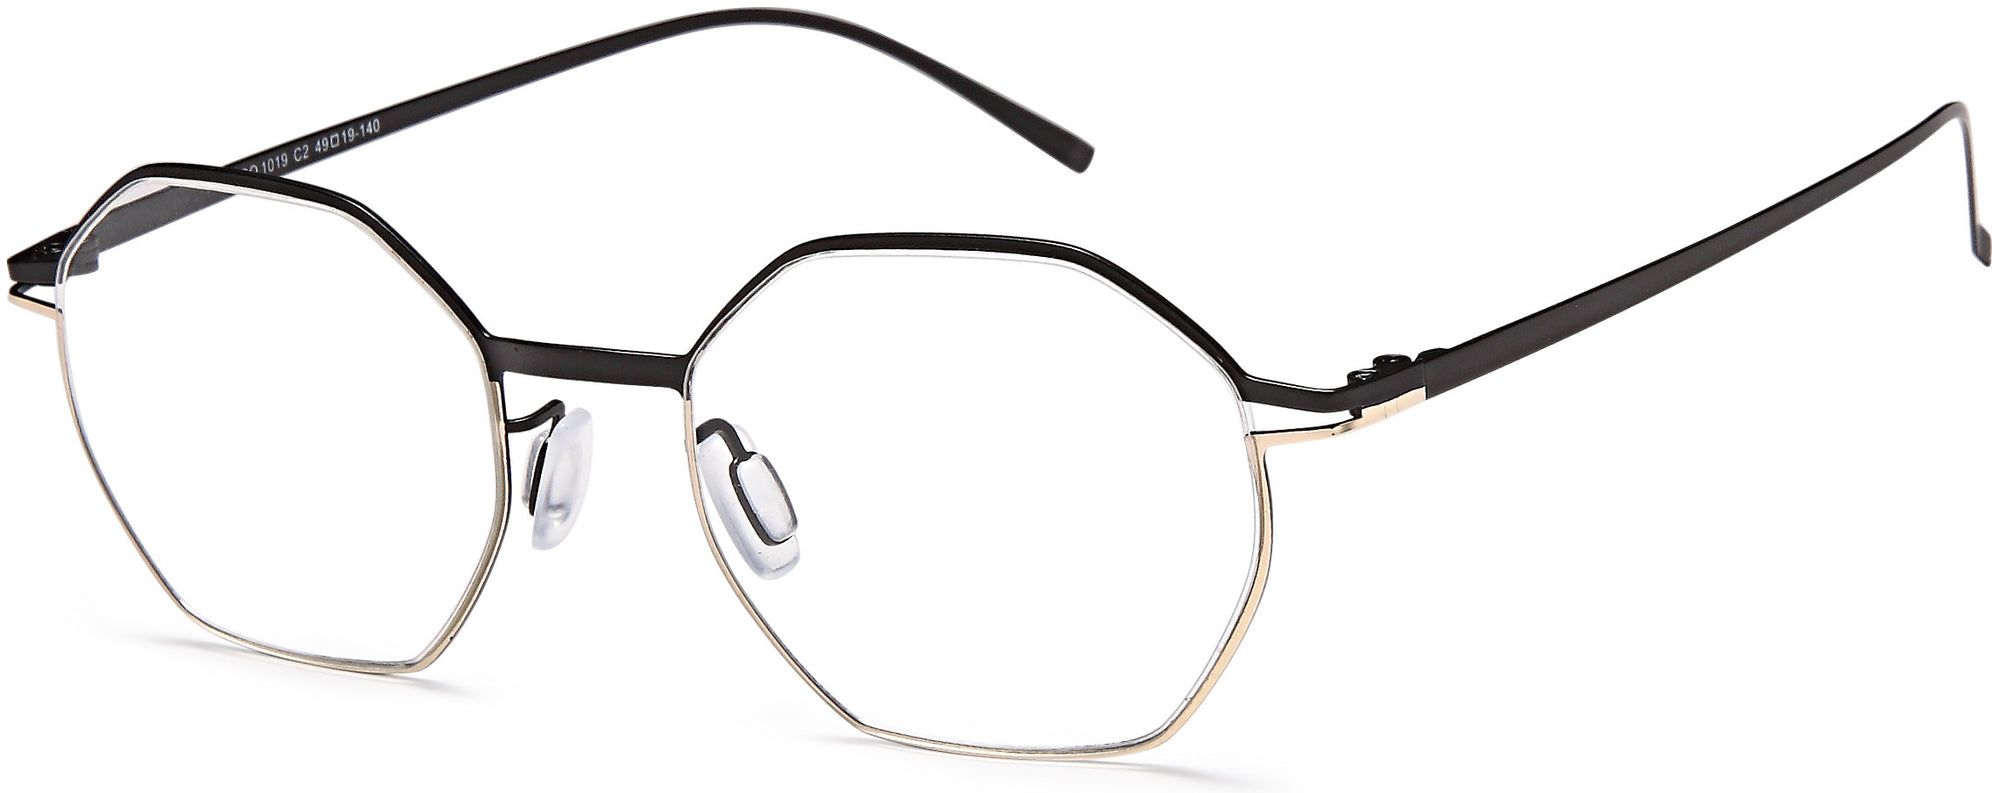 AGO Eyeglasses AGO1019 - Go-Readers.com